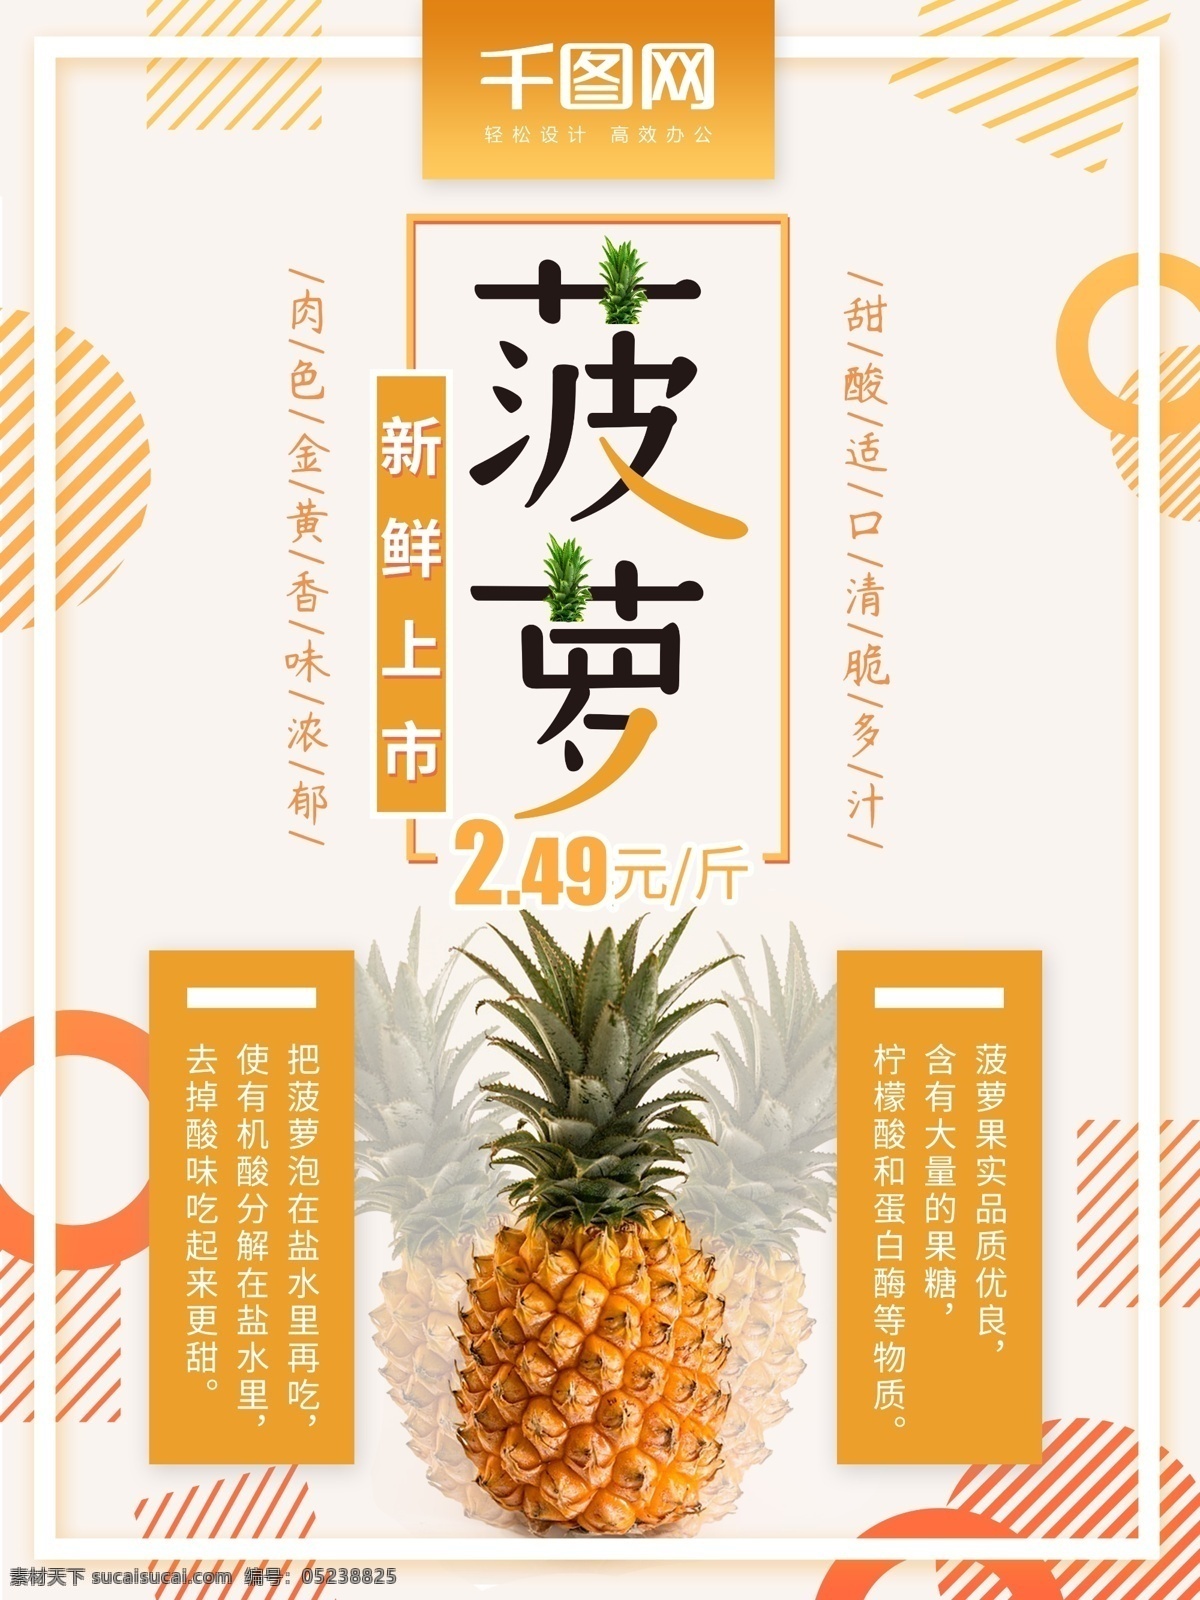 热带水果 菠萝 上市 促销 海报 黄色 小清新 几何 简约 创意 水果 菠萝促销 水果促销